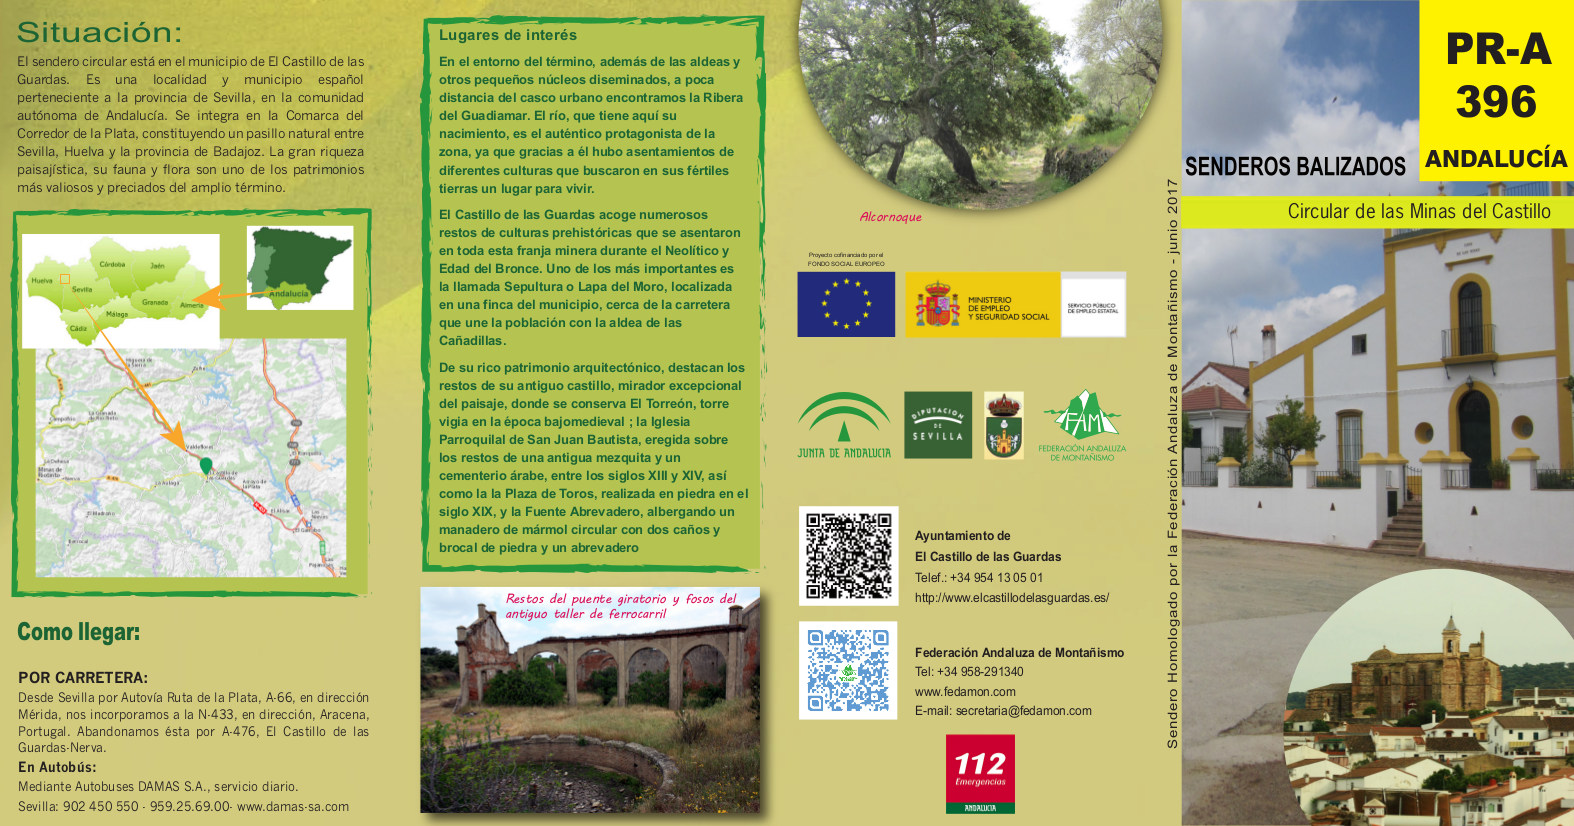 folleto PR-A 396_Minas del Castillo (1)